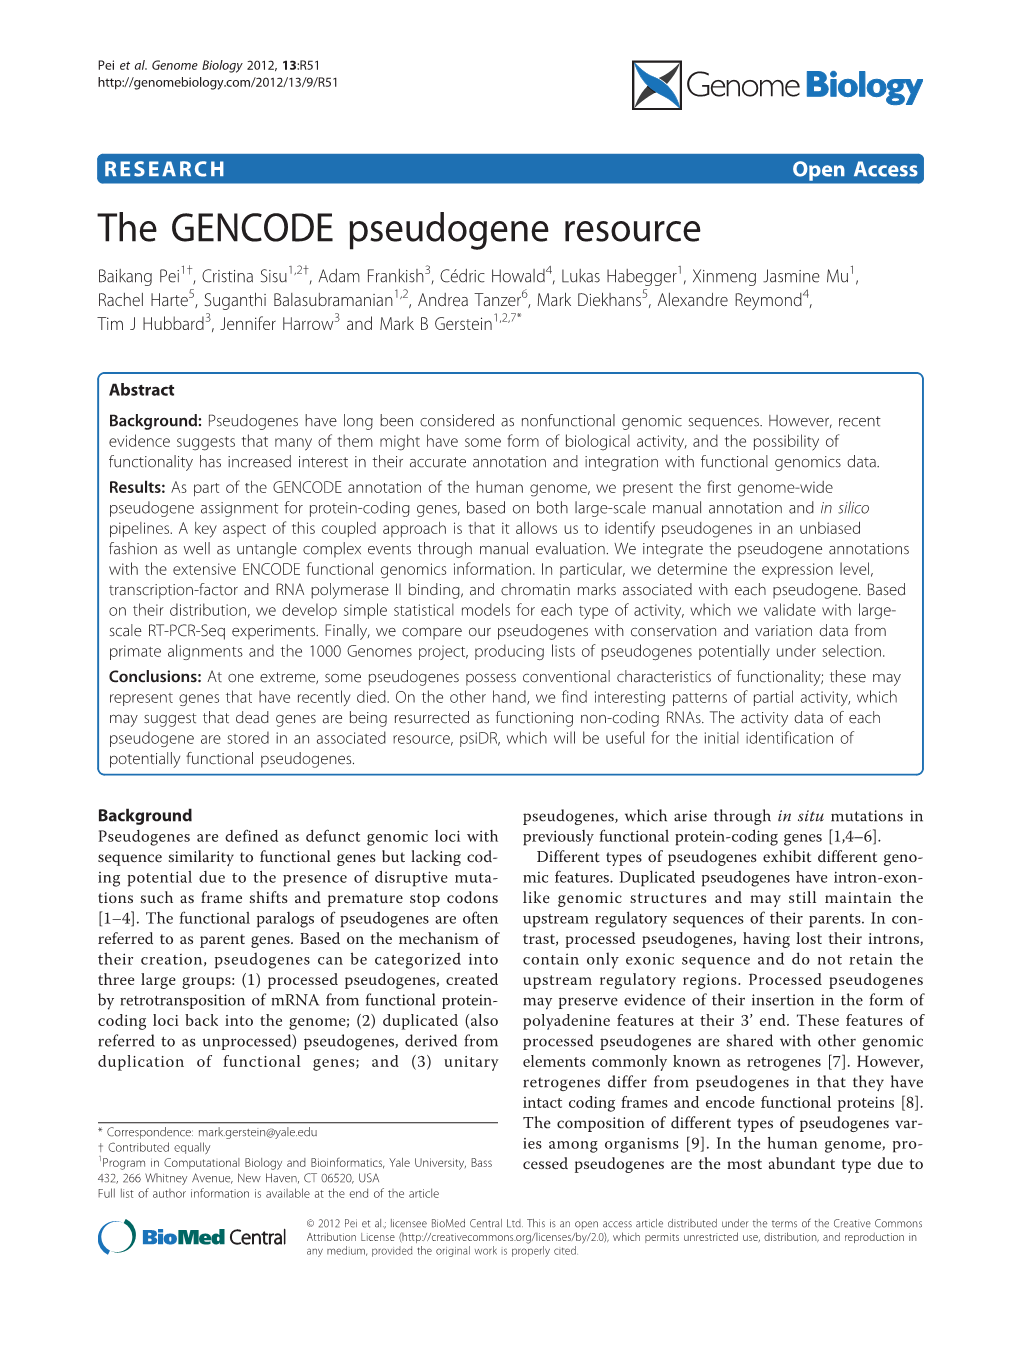 The GENCODE Pseudogene Resource